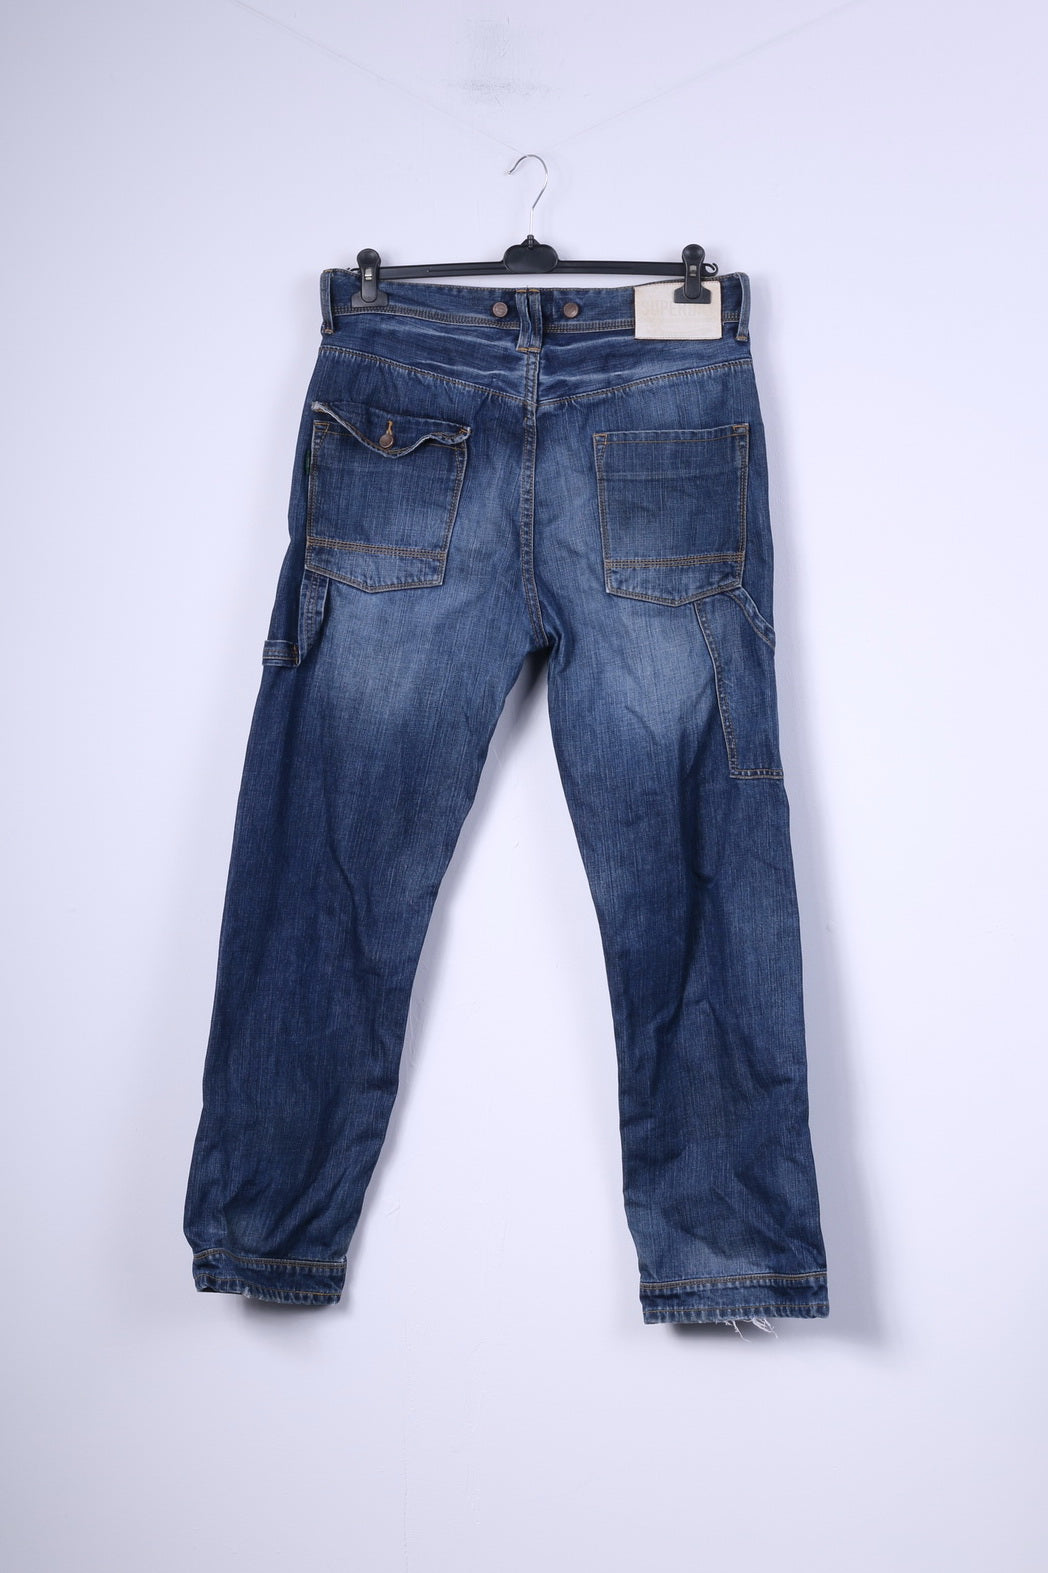 Superdry Mens W36 L32 Trousers Denim Jeans Navy Cotton Japan Pants